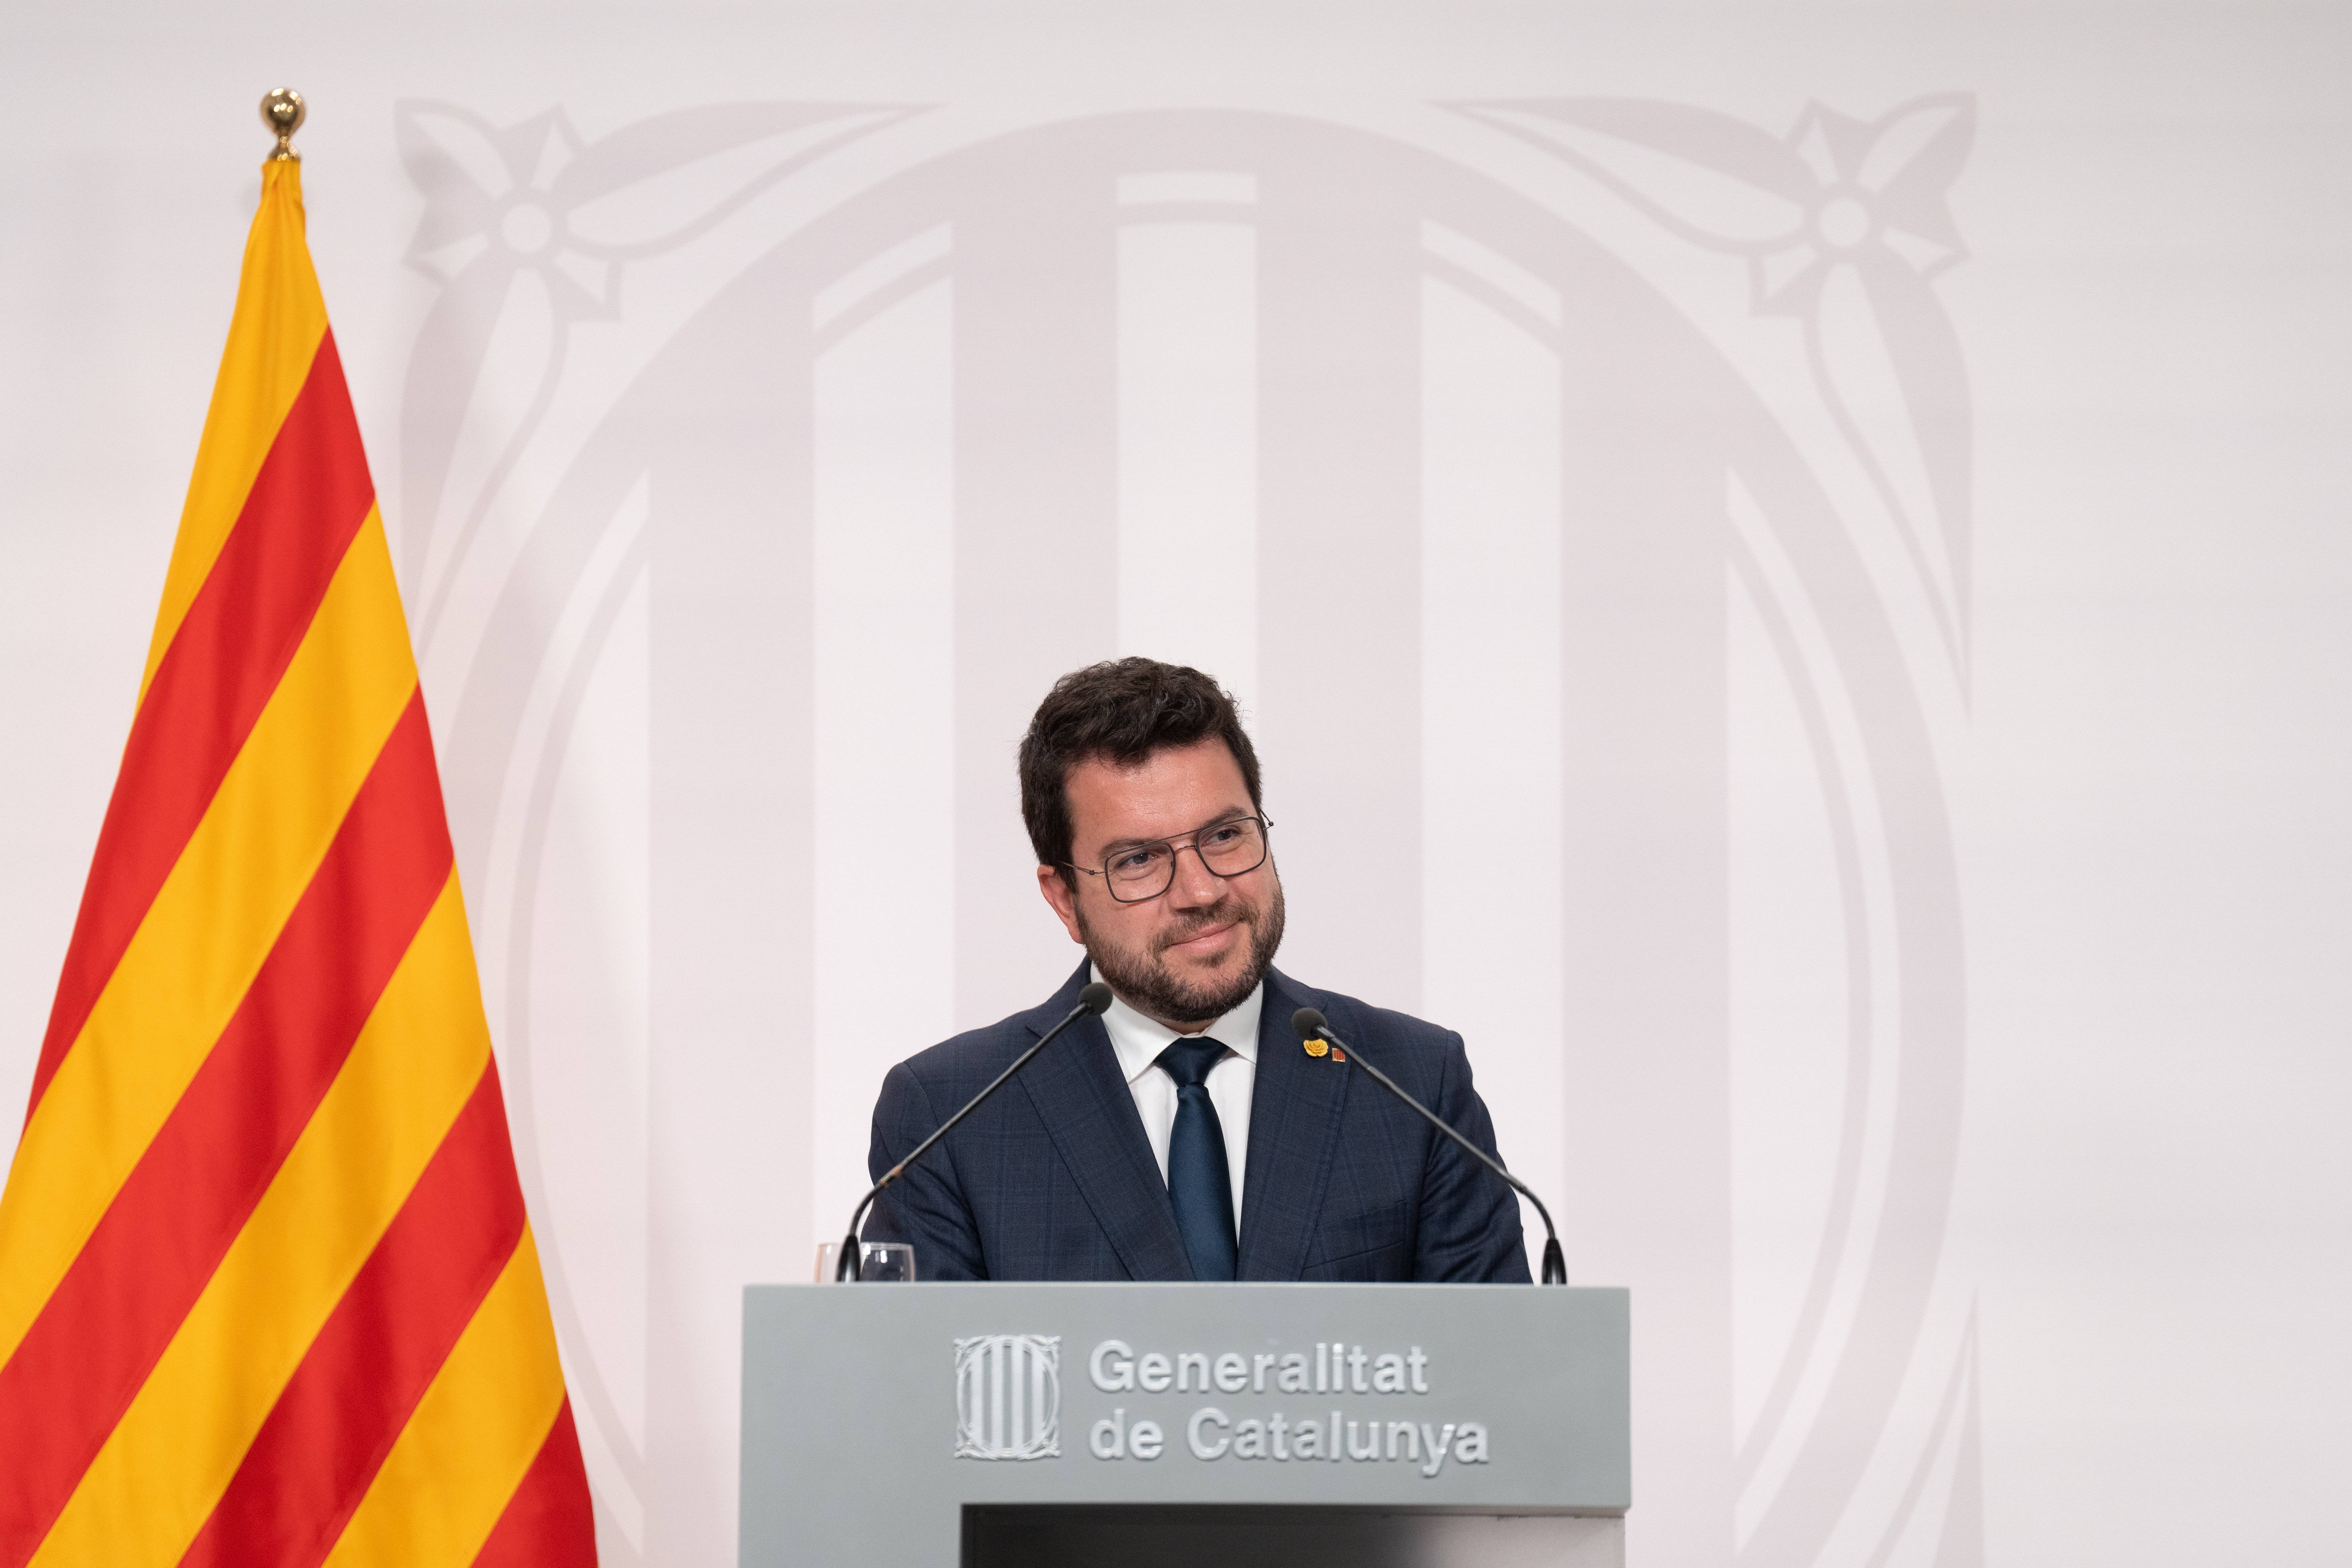 Aragonès veu un "fracàs" en la manifestació espanyolista: "L'únic projecte que tenen per a Catalunya és l'odi"